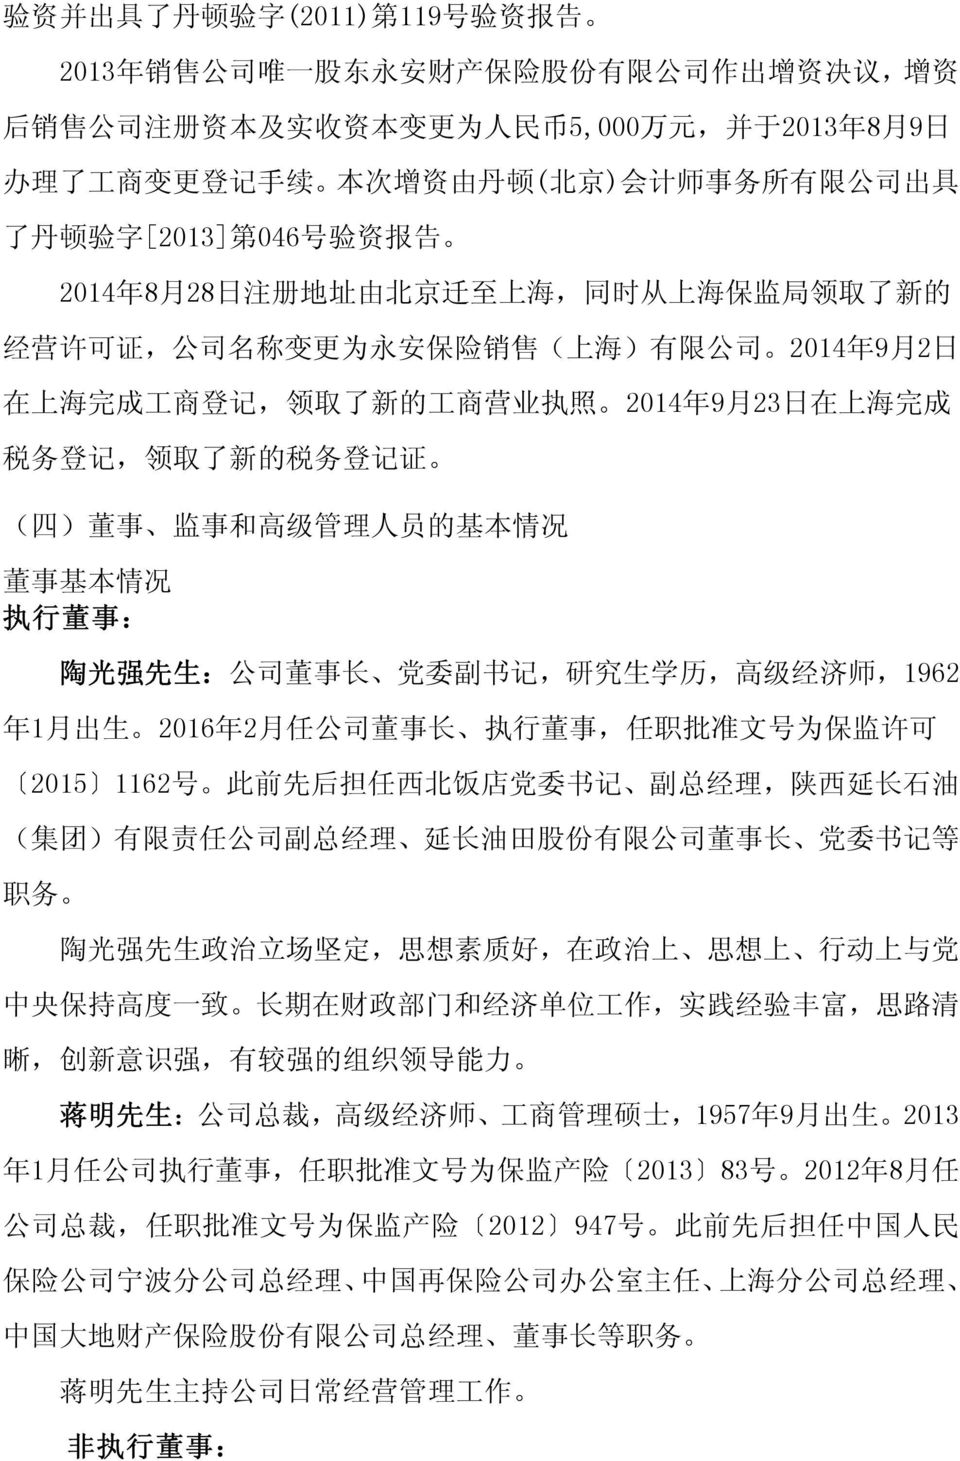 2014 年 9 月 2 日 在 上 海 完 成 工 商 登 记, 领 取 了 新 的 工 商 营 业 执 照 2014 年 9 月 23 日 在 上 海 完 成 税 务 登 记, 领 取 了 新 的 税 务 登 记 证 ( 四 ) 董 事 监 事 和 高 级 管 理 人 员 的 基 本 情 况 董 事 基 本 情 况 执 行 董 事 : 陶 光 强 先 生 : 公 司 董 事 长 党 委 副